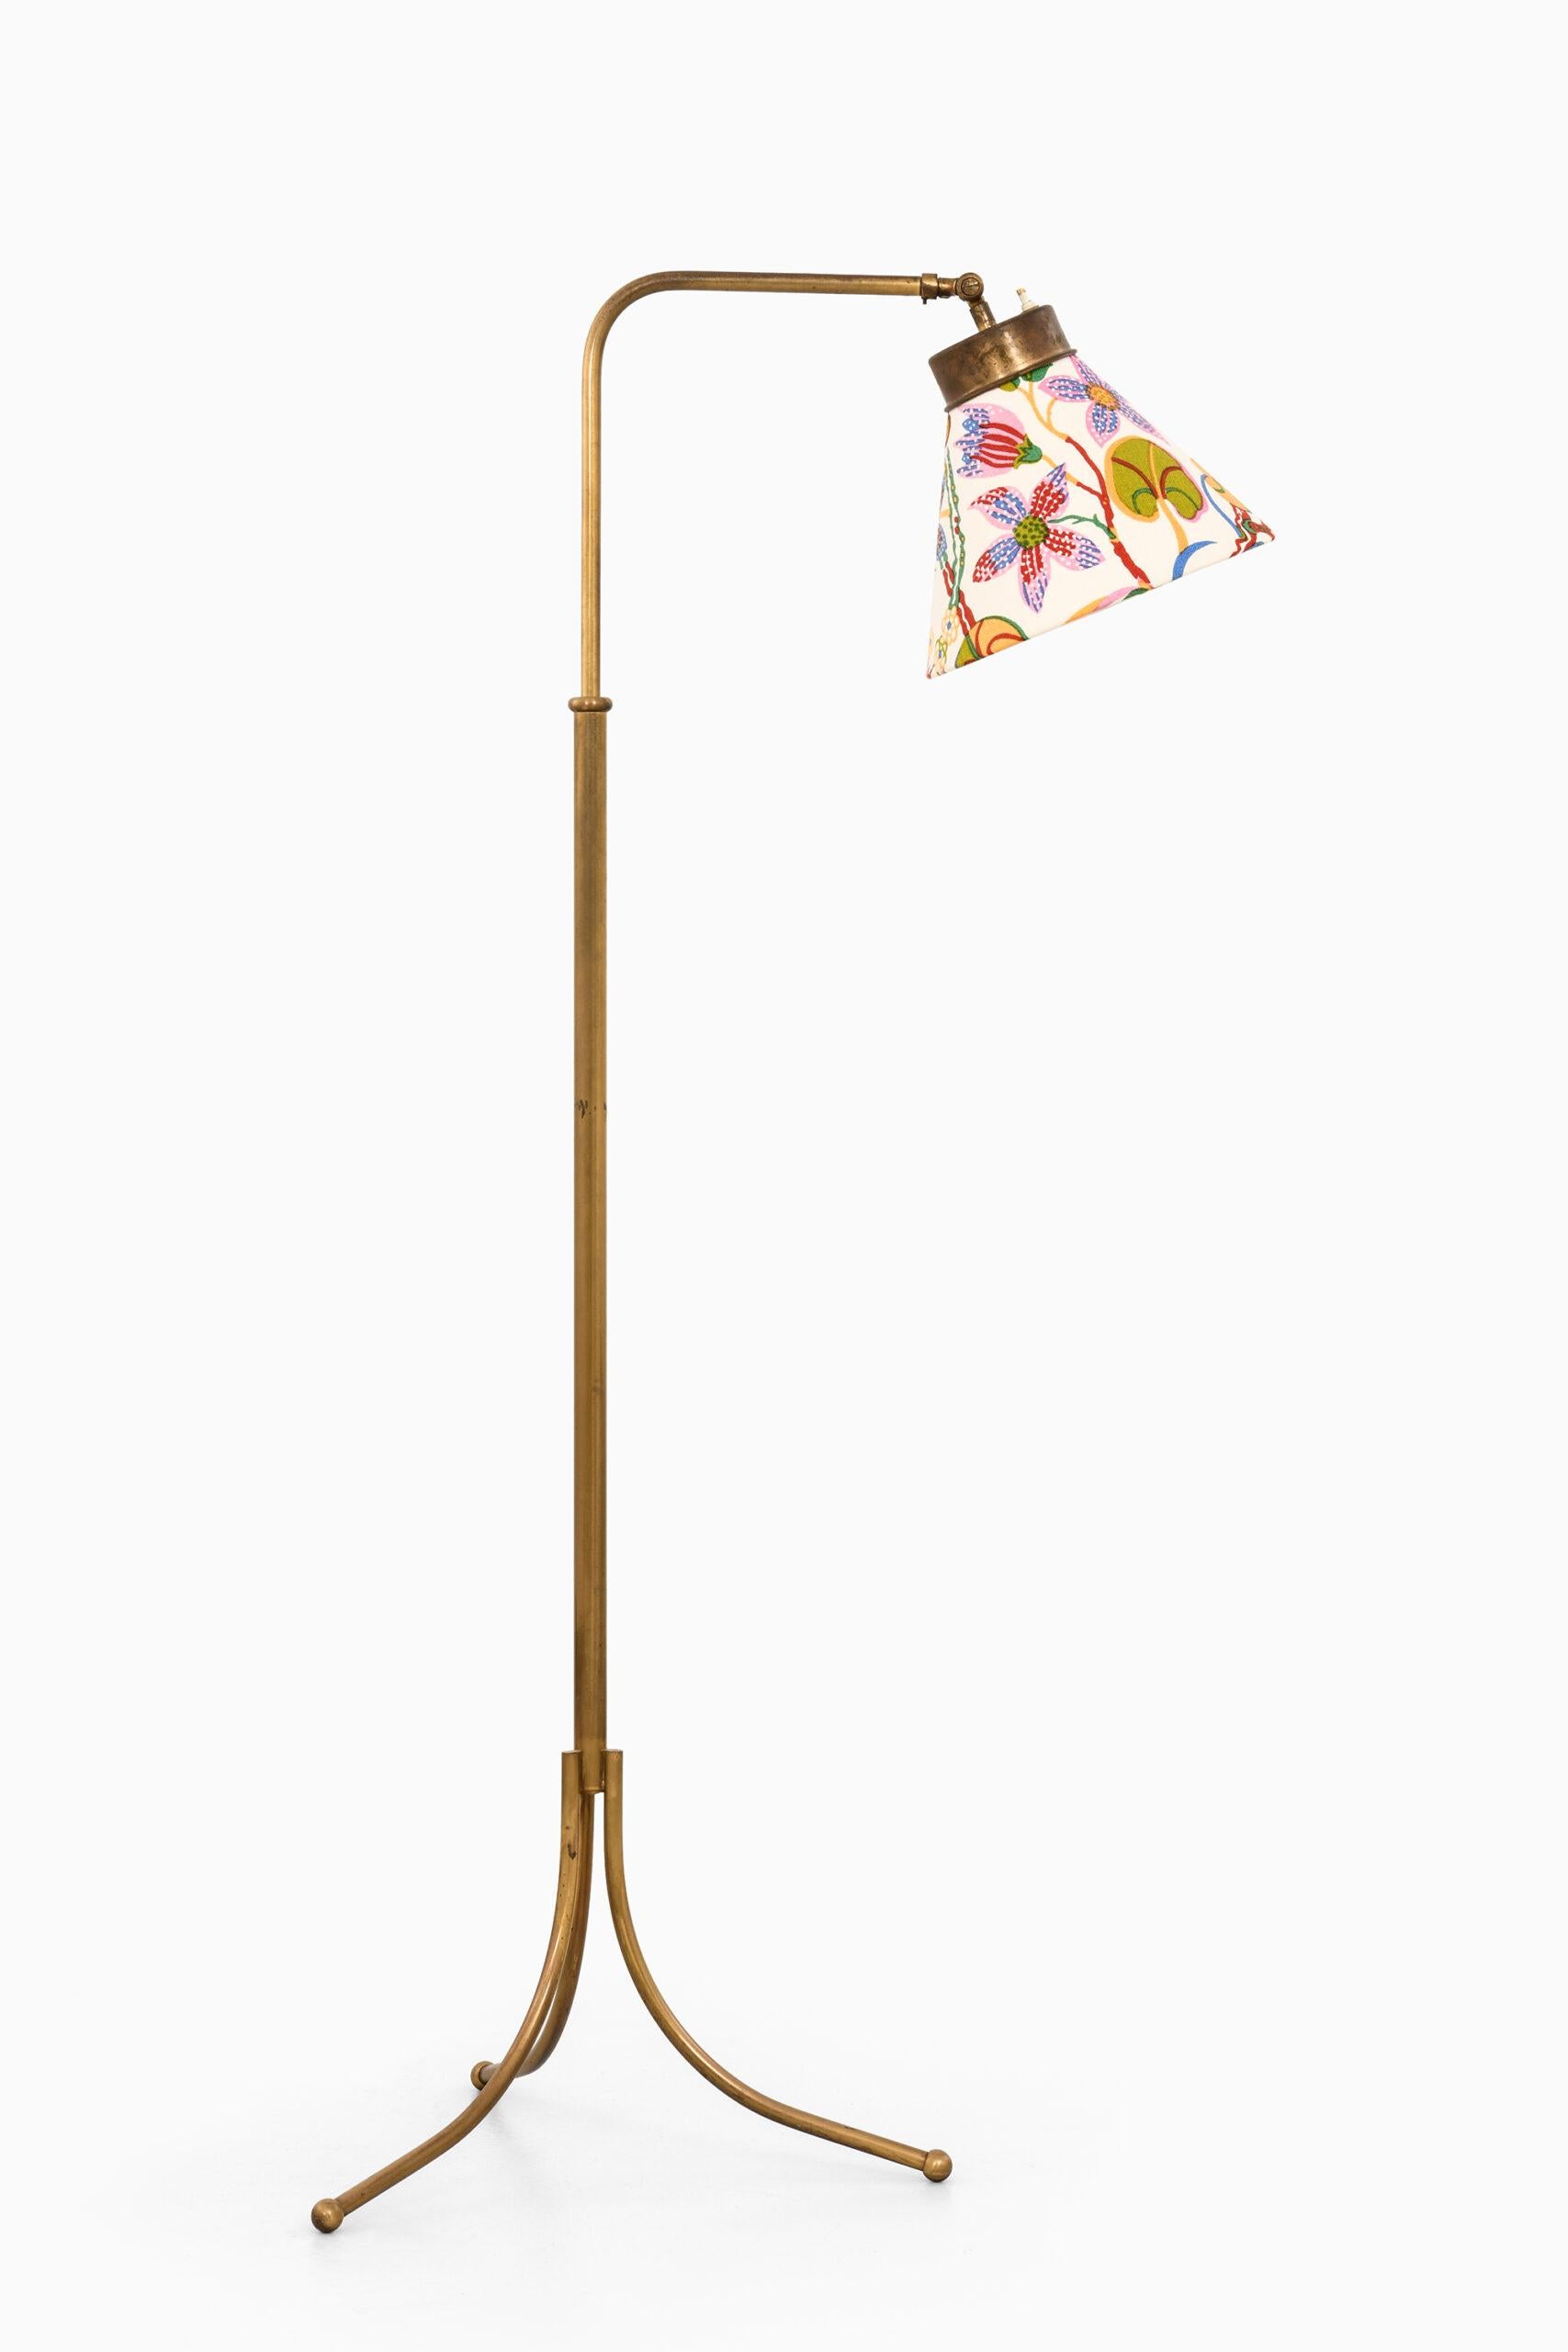 Paire de lampadaires réglables en hauteur, modèle 1842, conçus par Josef Frank. Produit par Svenskt Tenn en Suède. Hauteur : 98,5-145 cm.